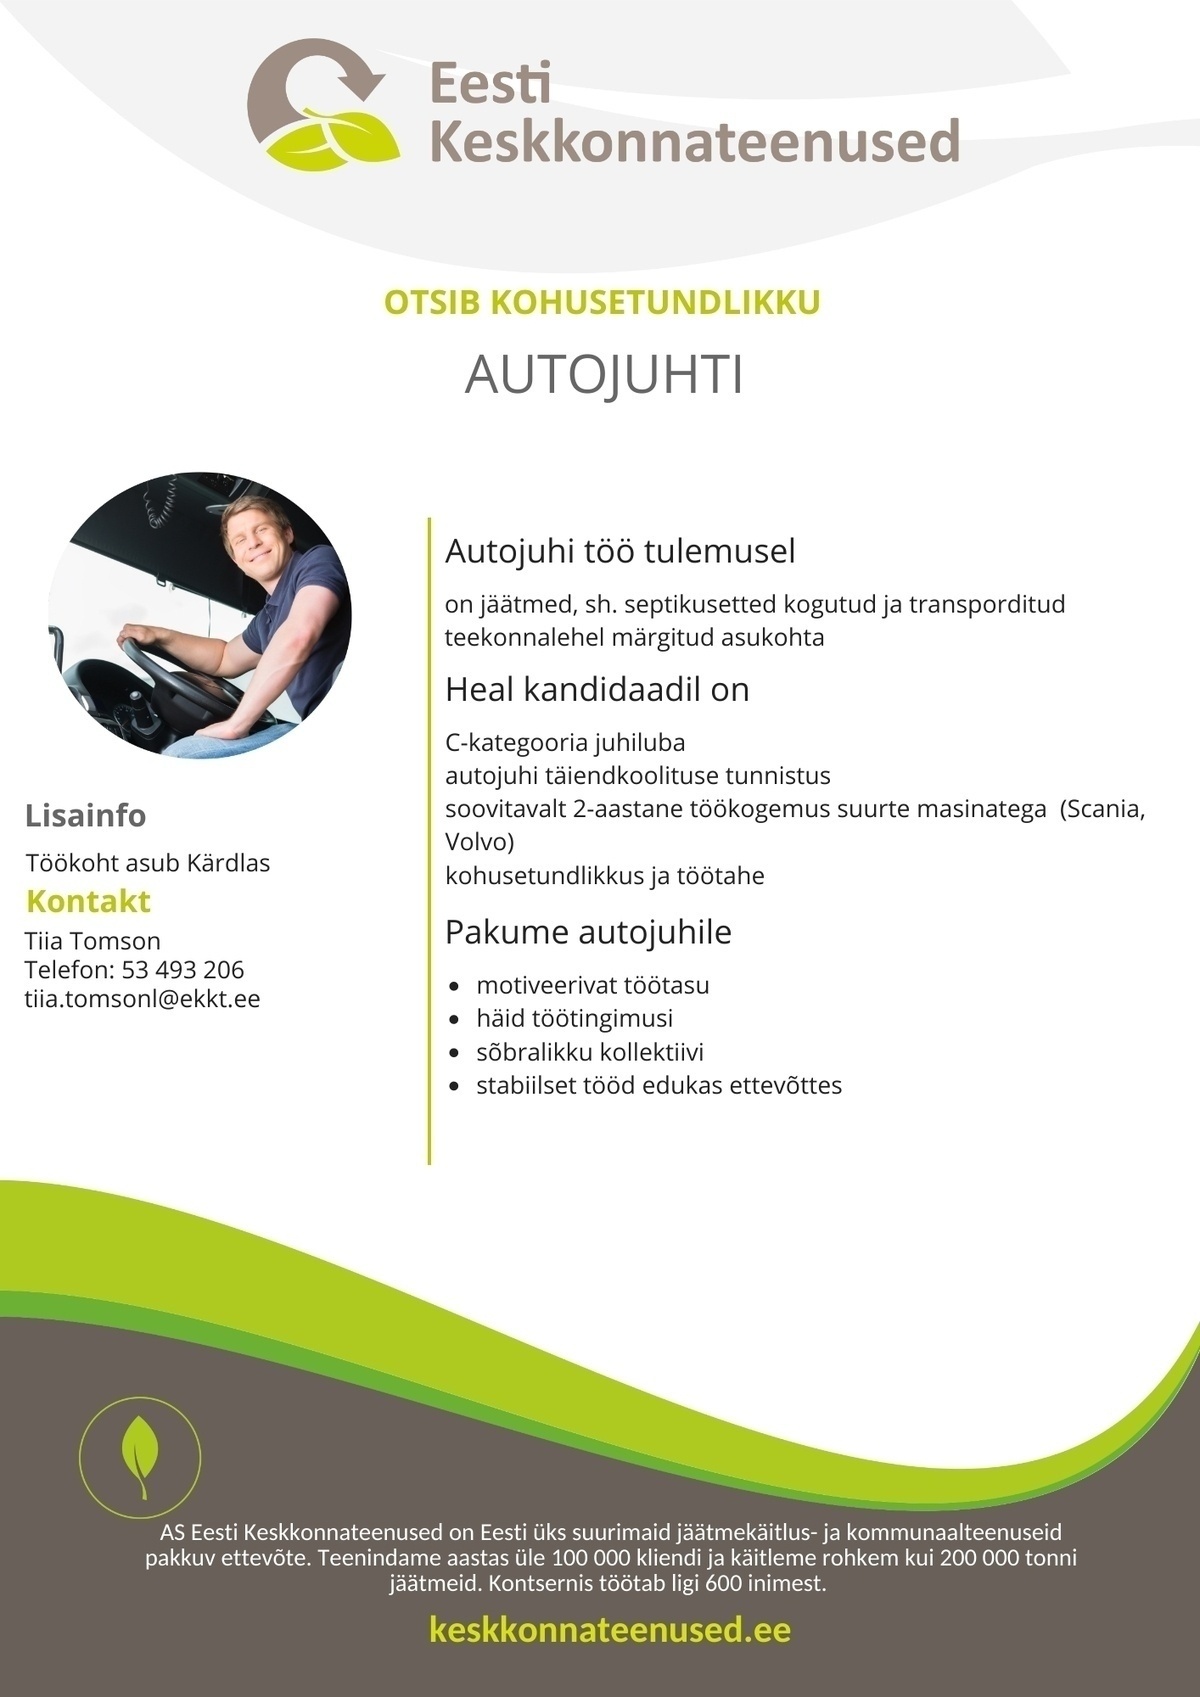 Eesti Keskkonnateenused AS Jäätmeveo autojuht